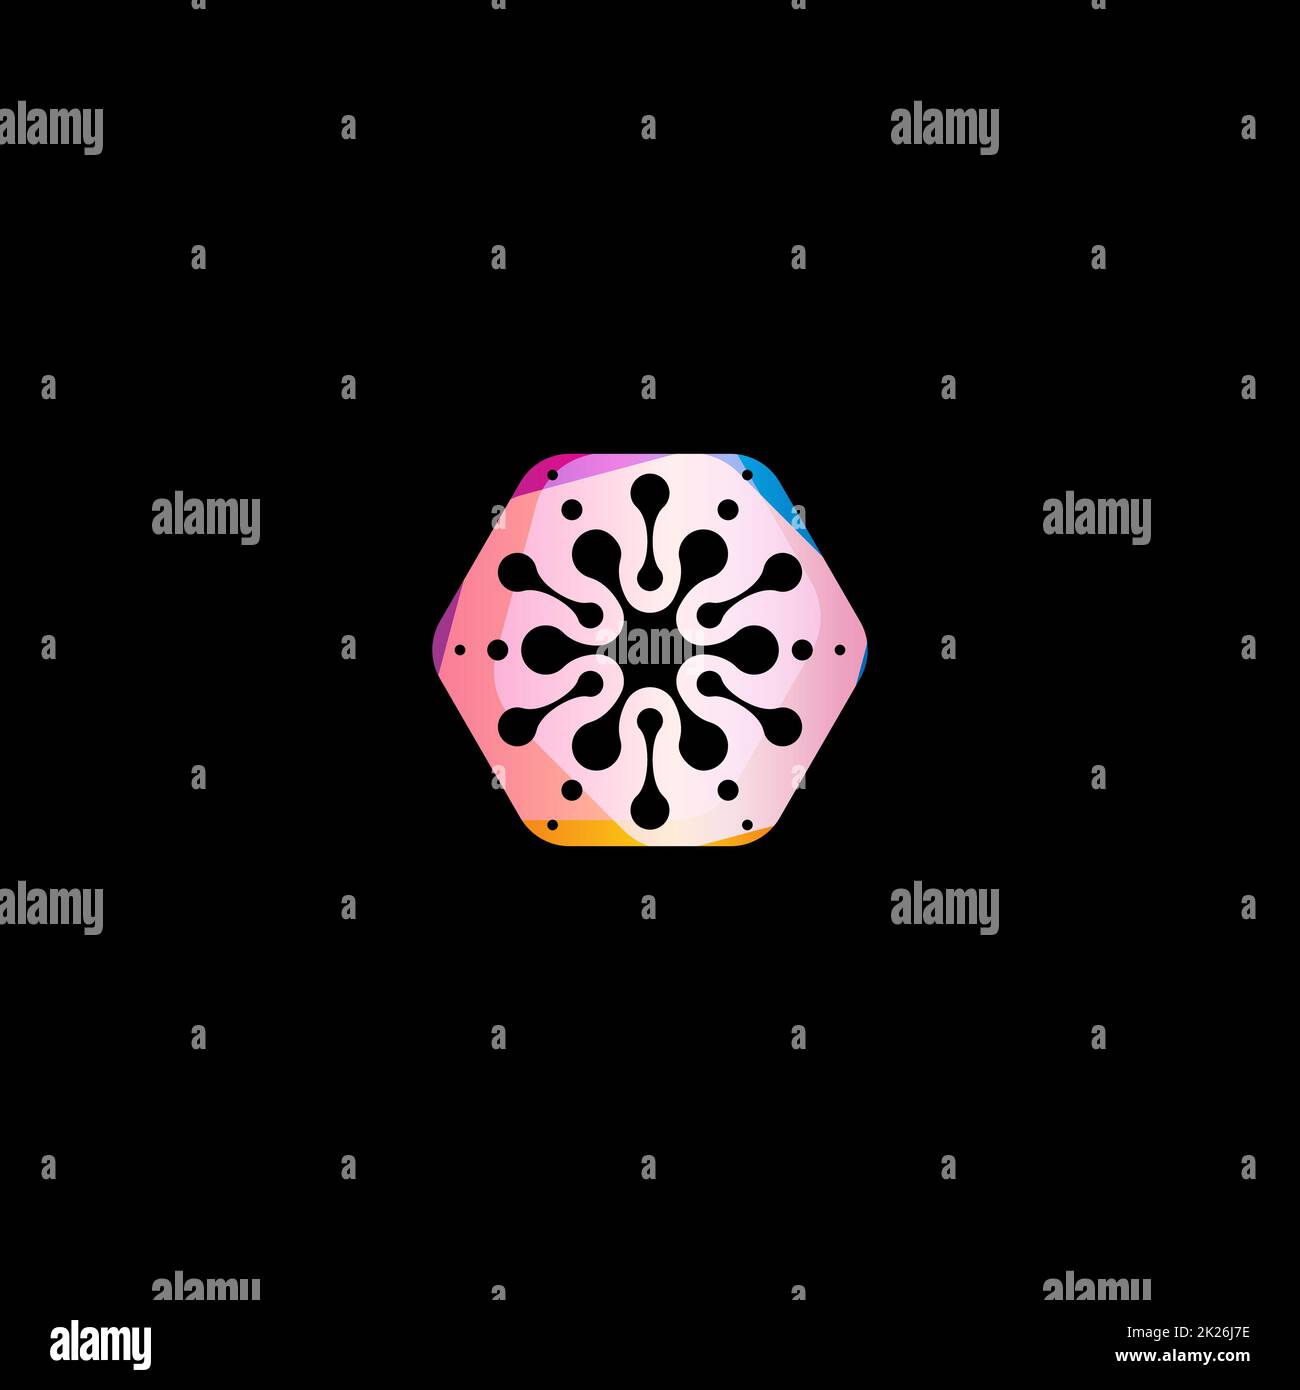 Abstract snowflake forma colorata. Cerchi insolito star vettore isolato modello logo su sfondo nero. Foto Stock